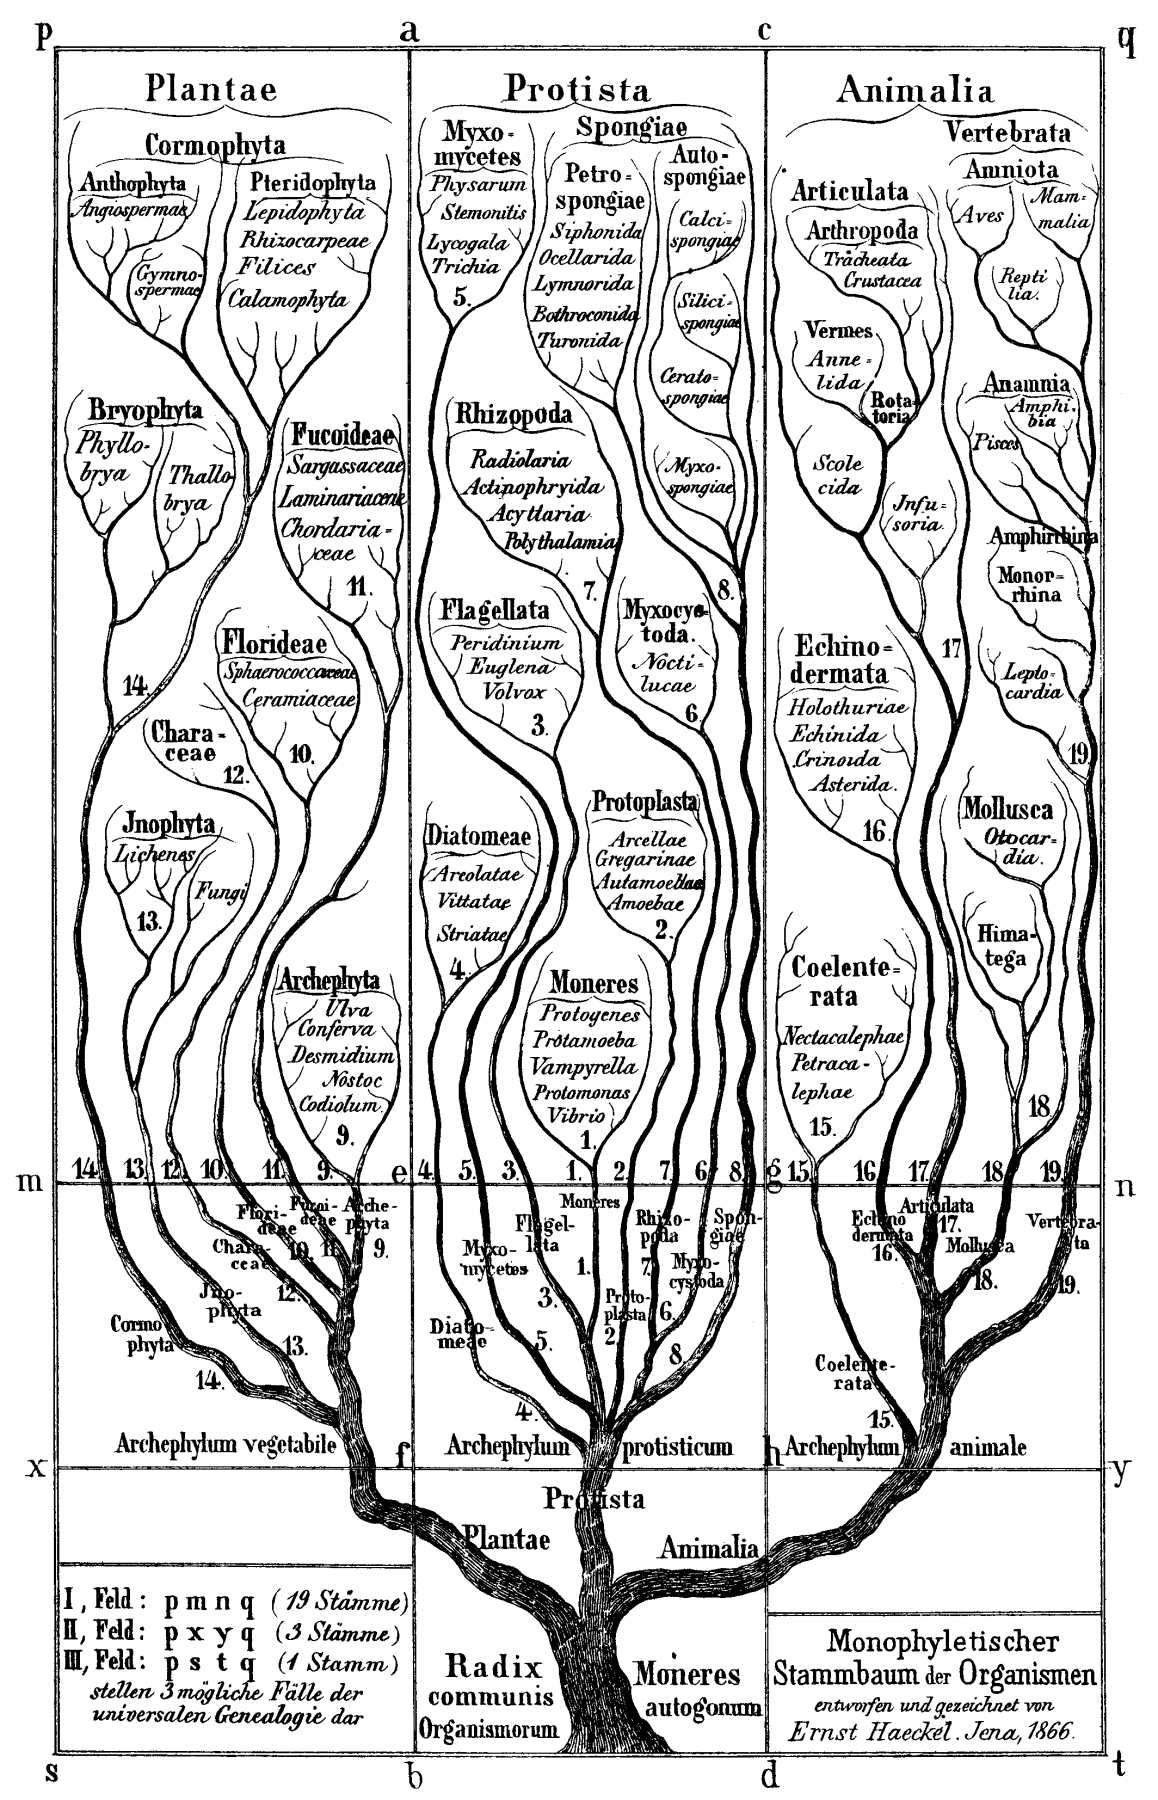 Alte Darstellung eines verzweigten Baums mit wissenschaftlichen Bezeichnungen, die verschiedene Ordnungen der Organismenklassifikationen darstellen. Titel: Monophyletischer Stammbaum der Organismen.